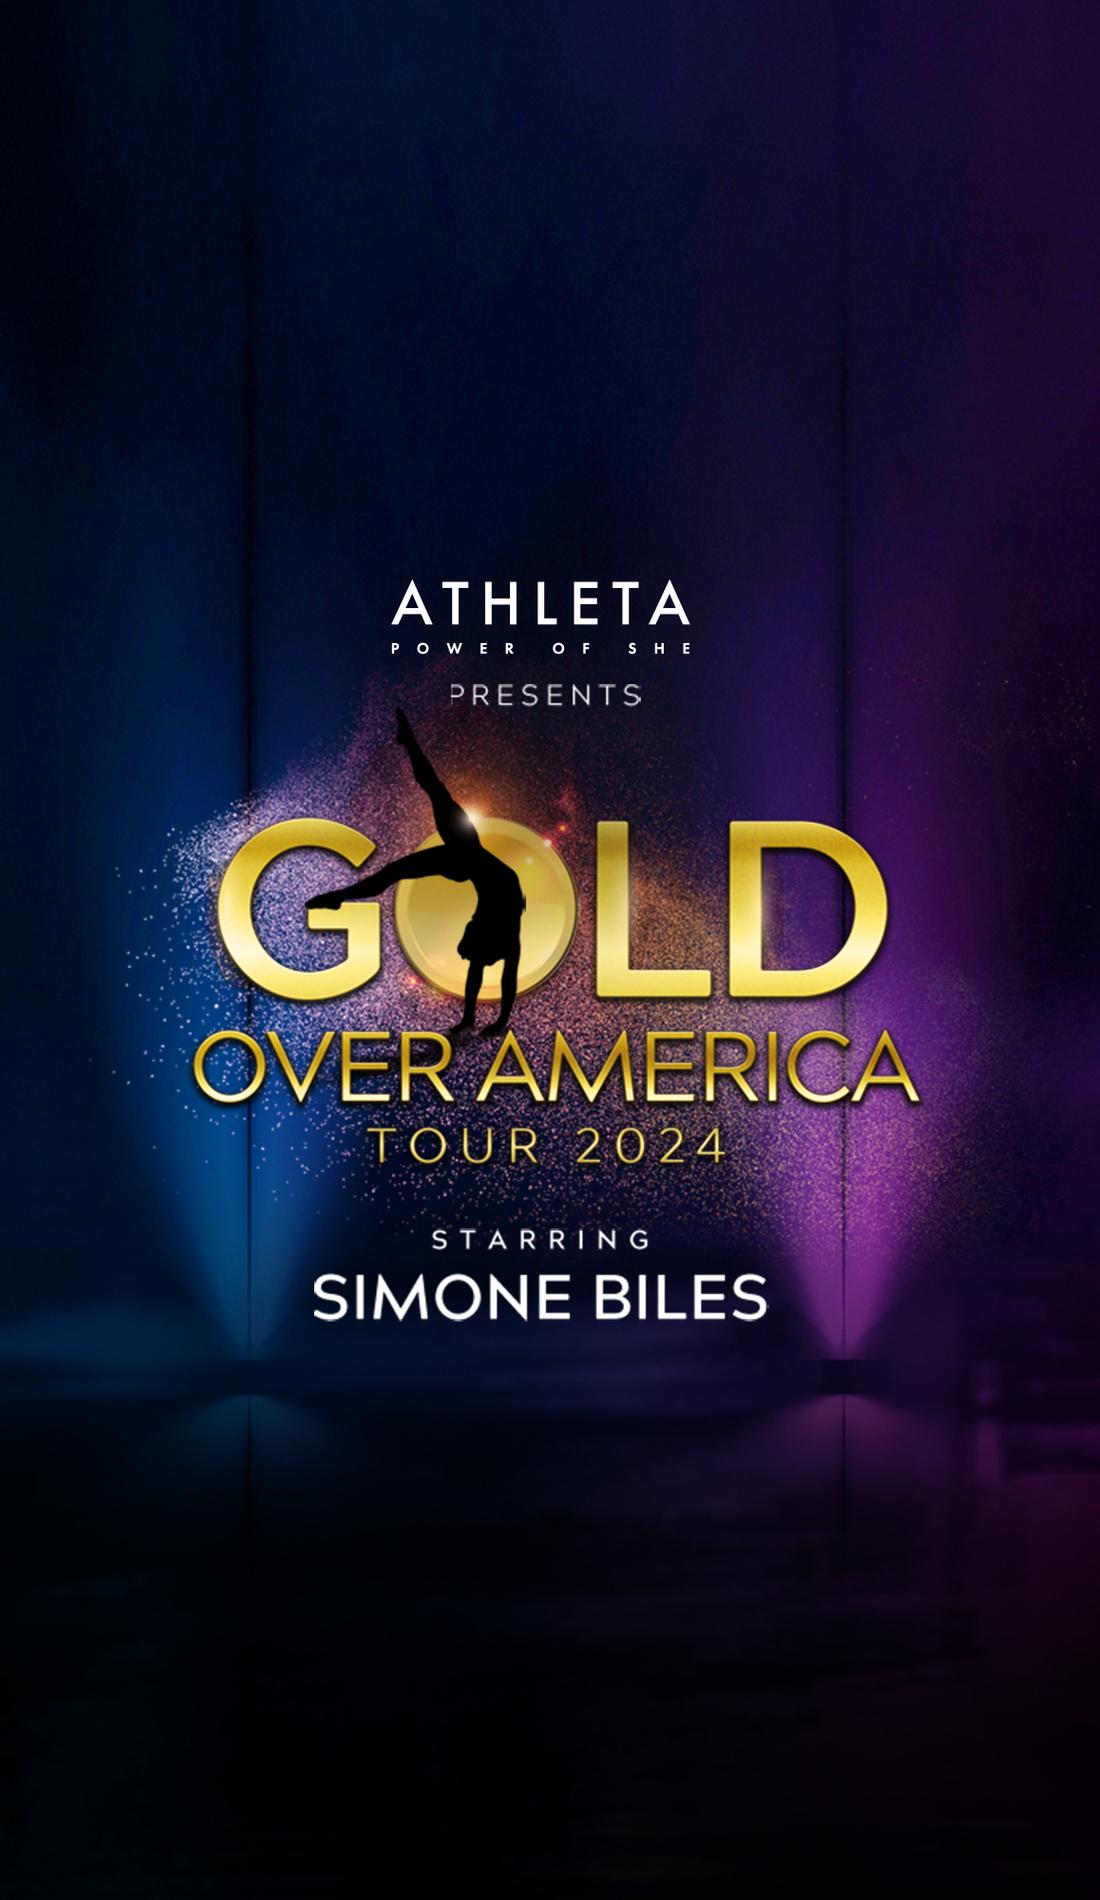 Simone Biles to bring 'Gold Over America Tour' to Kansas City